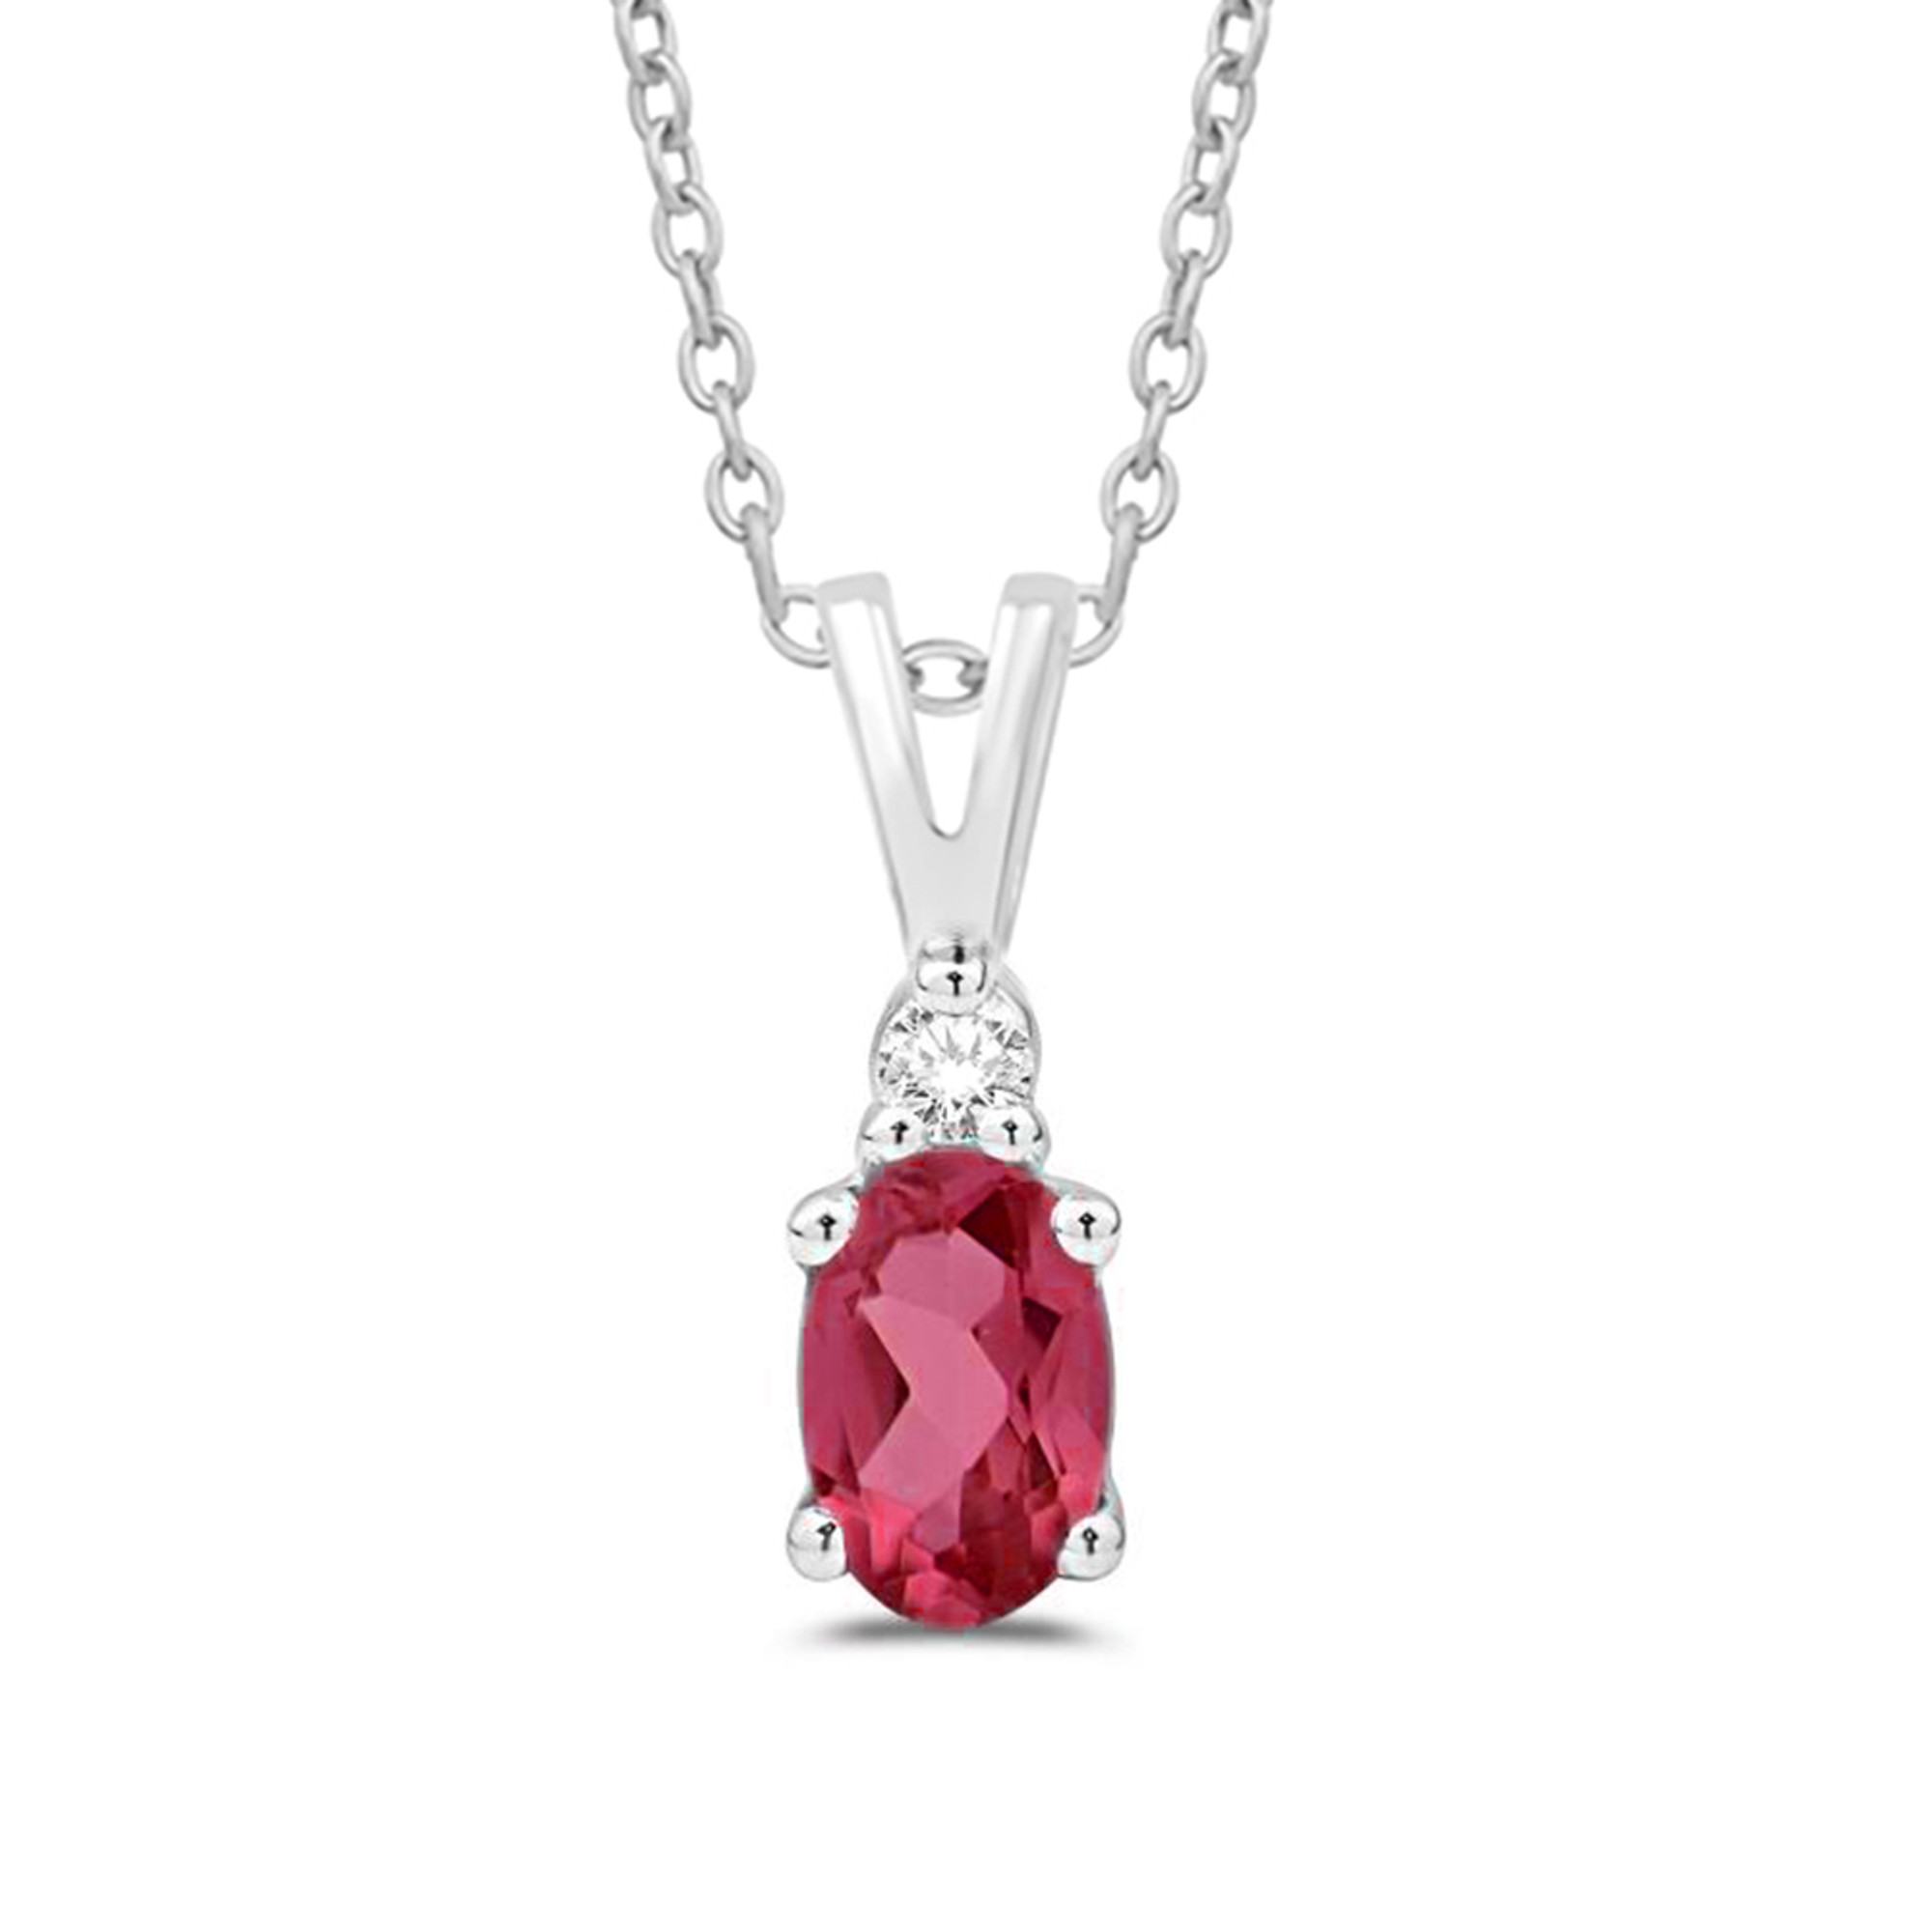 Oval Ruby & Diamond Necklace